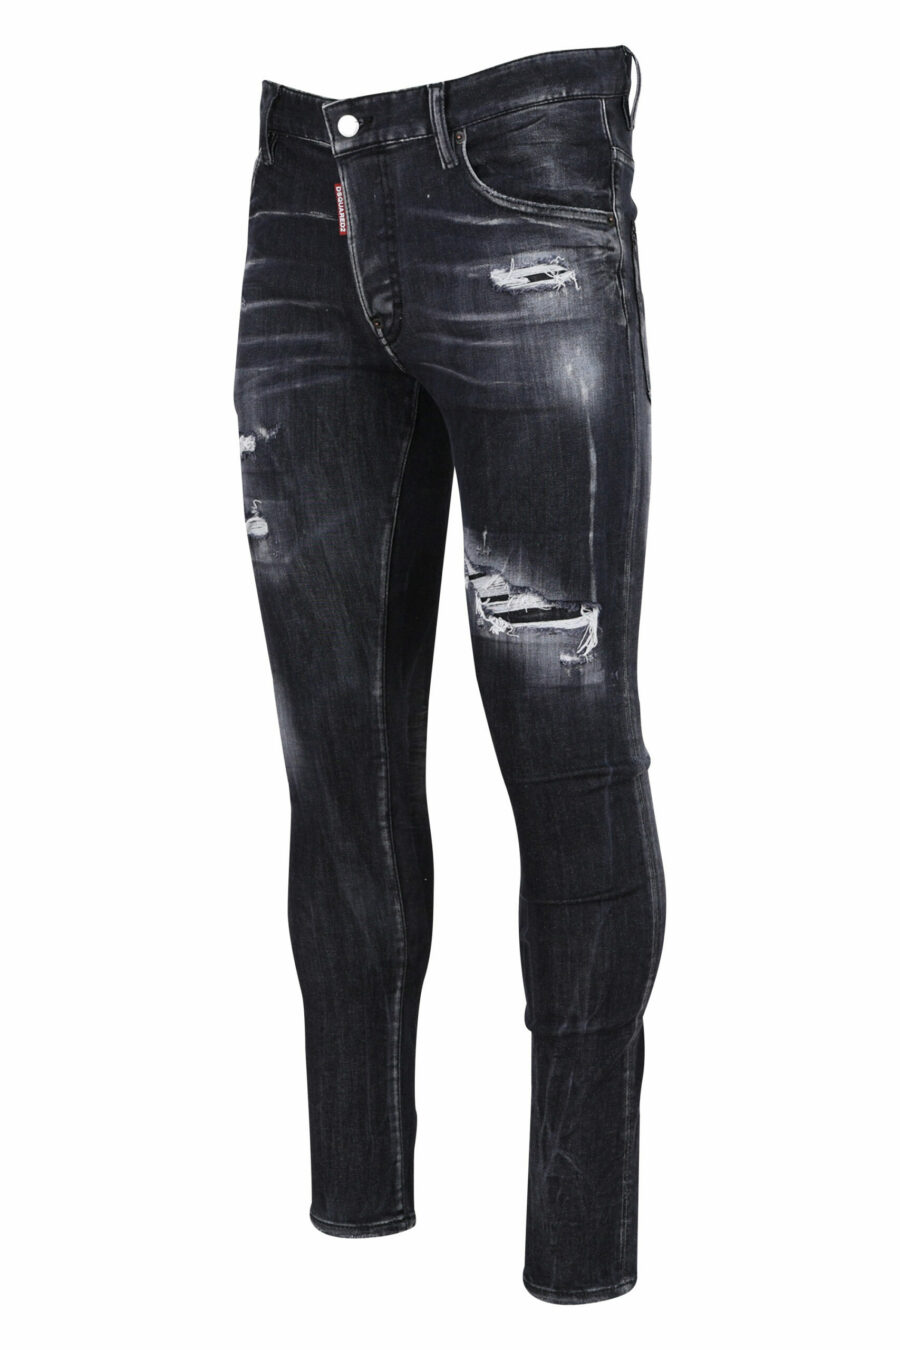 Super twinkey Jeans schwarz semi-getragen und zerrissen - 8054148103088 1 skaliert